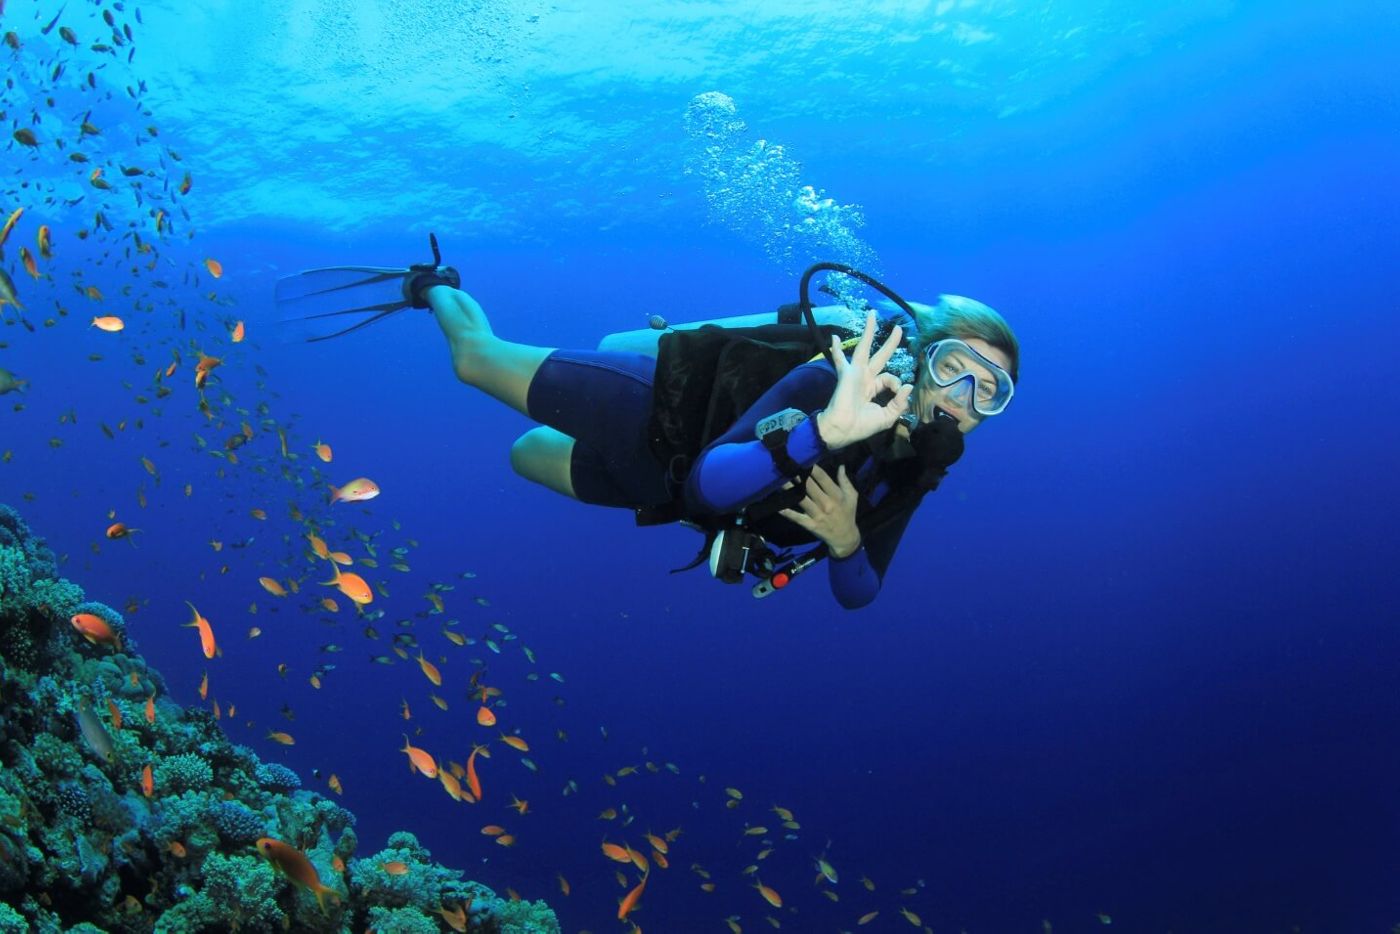 Best diving spots in Vietnam